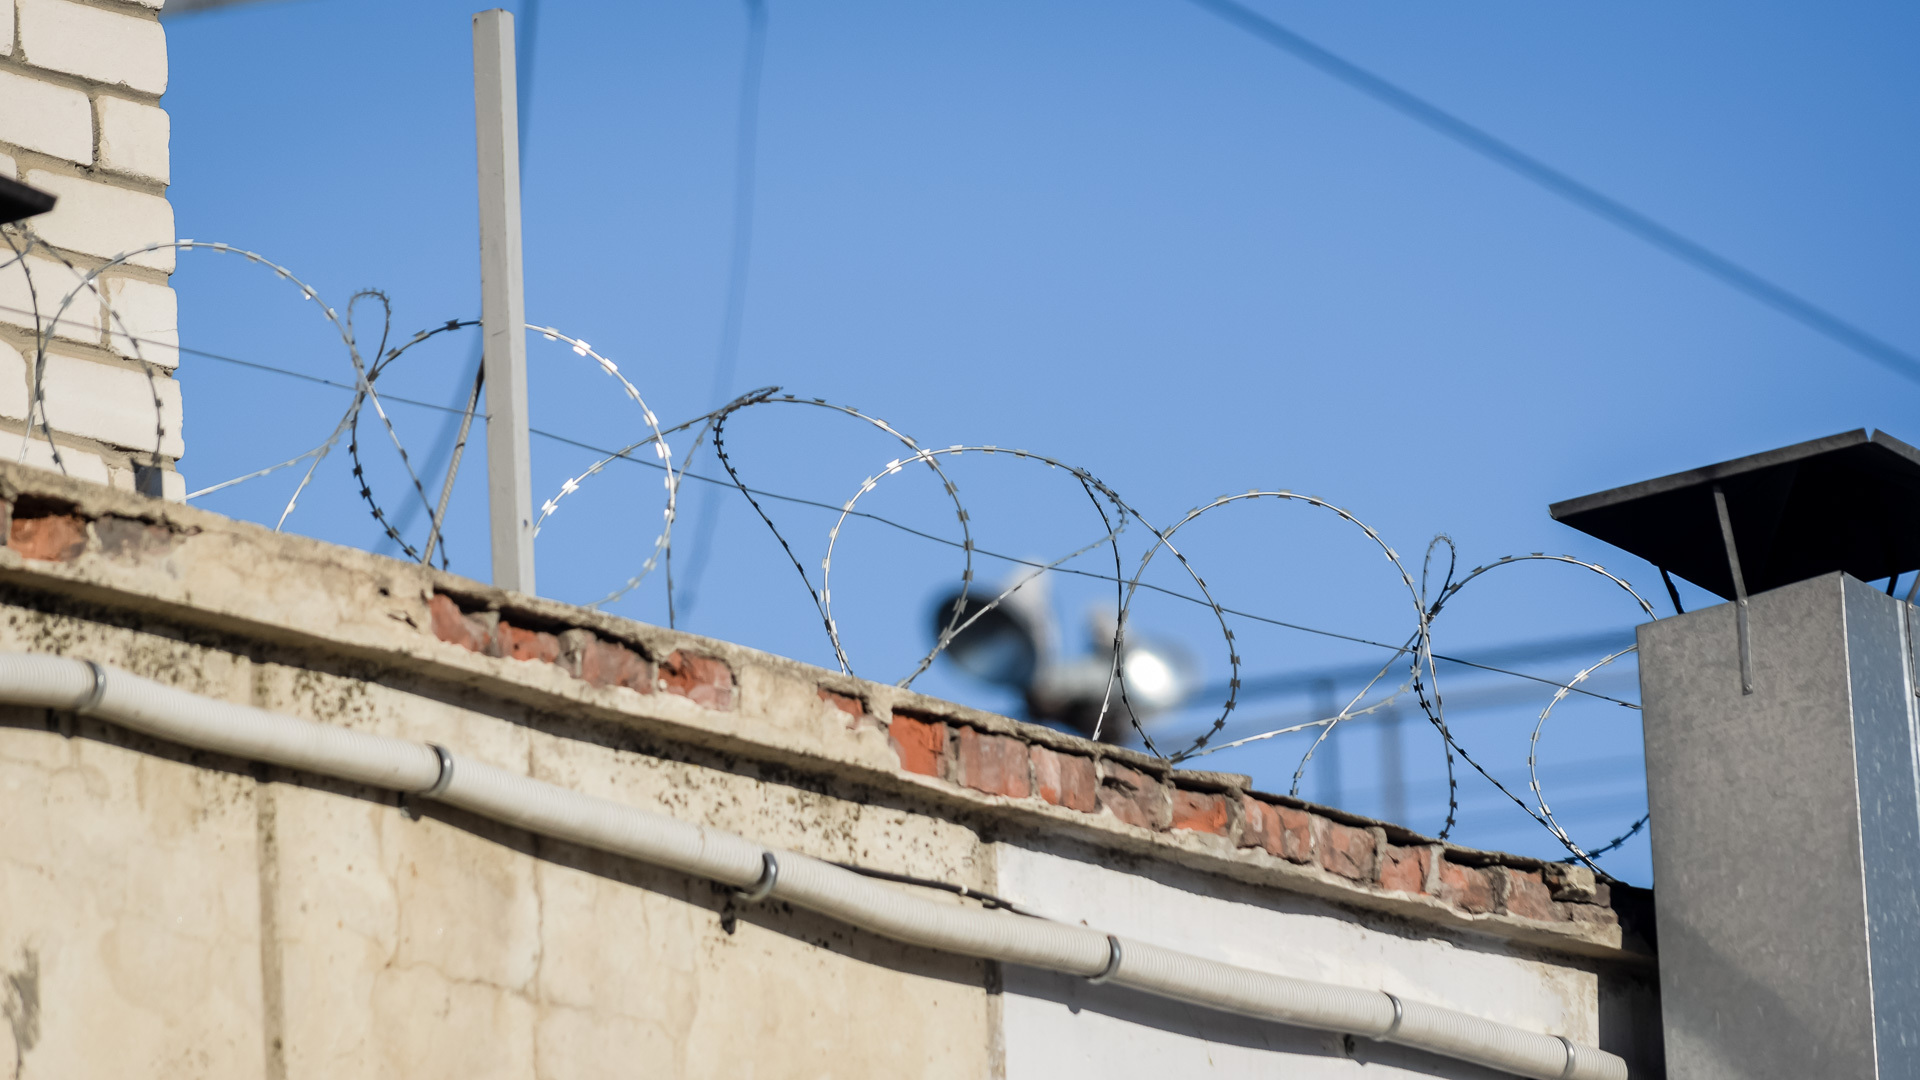 Свободен: в Башкирии решили помиловать одного заключенного